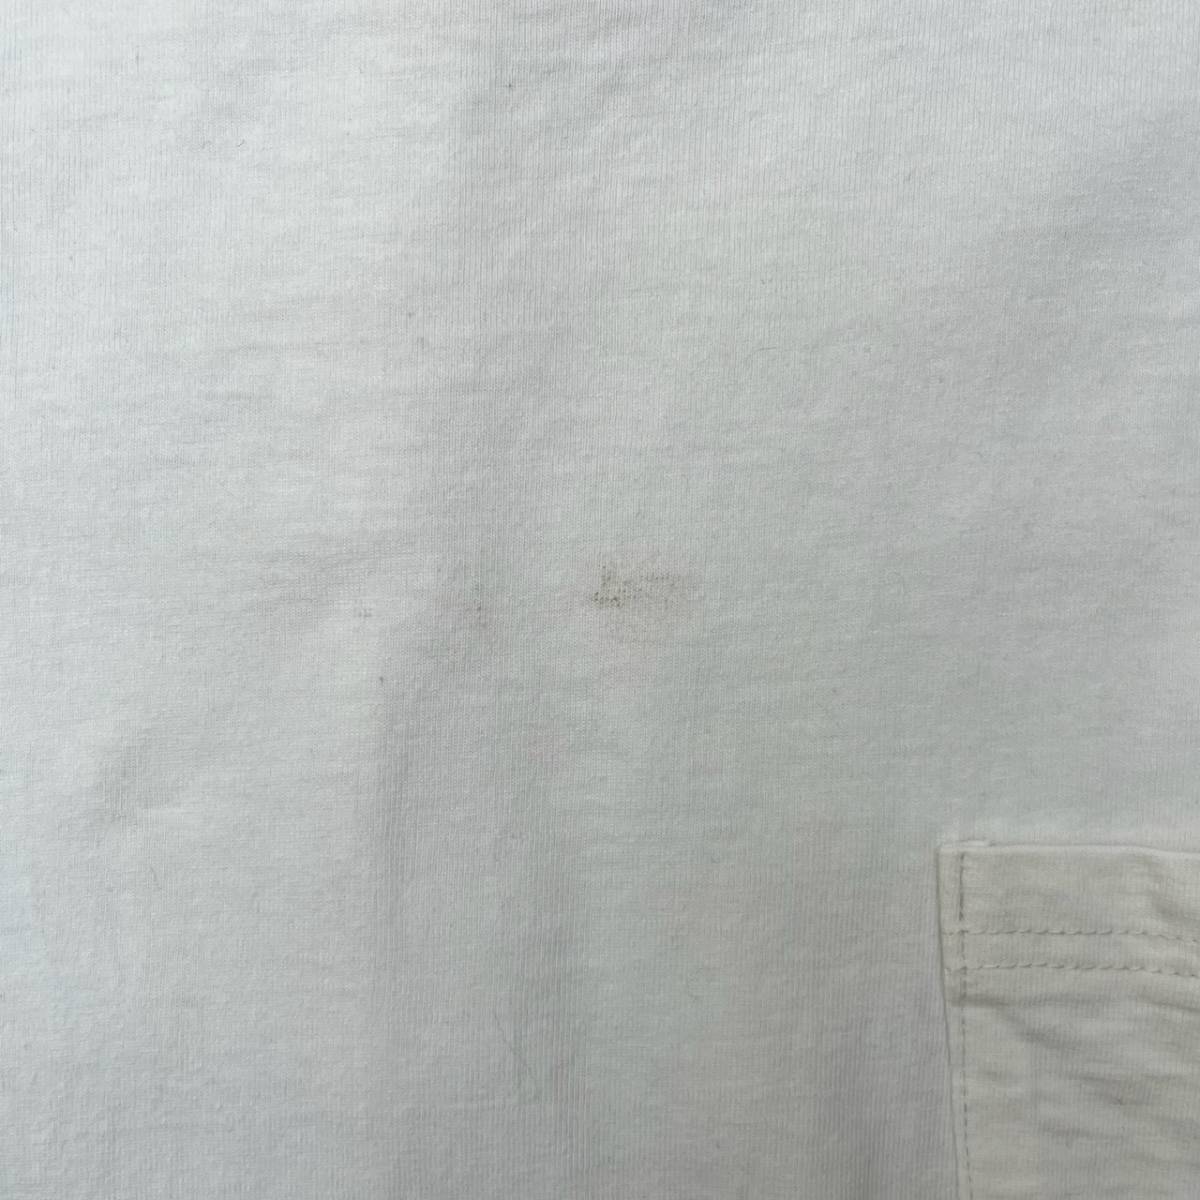 REMI RELIEF レミレリーフ Mサイズ Tシャツ ポケット 半袖 無地 ホワイト